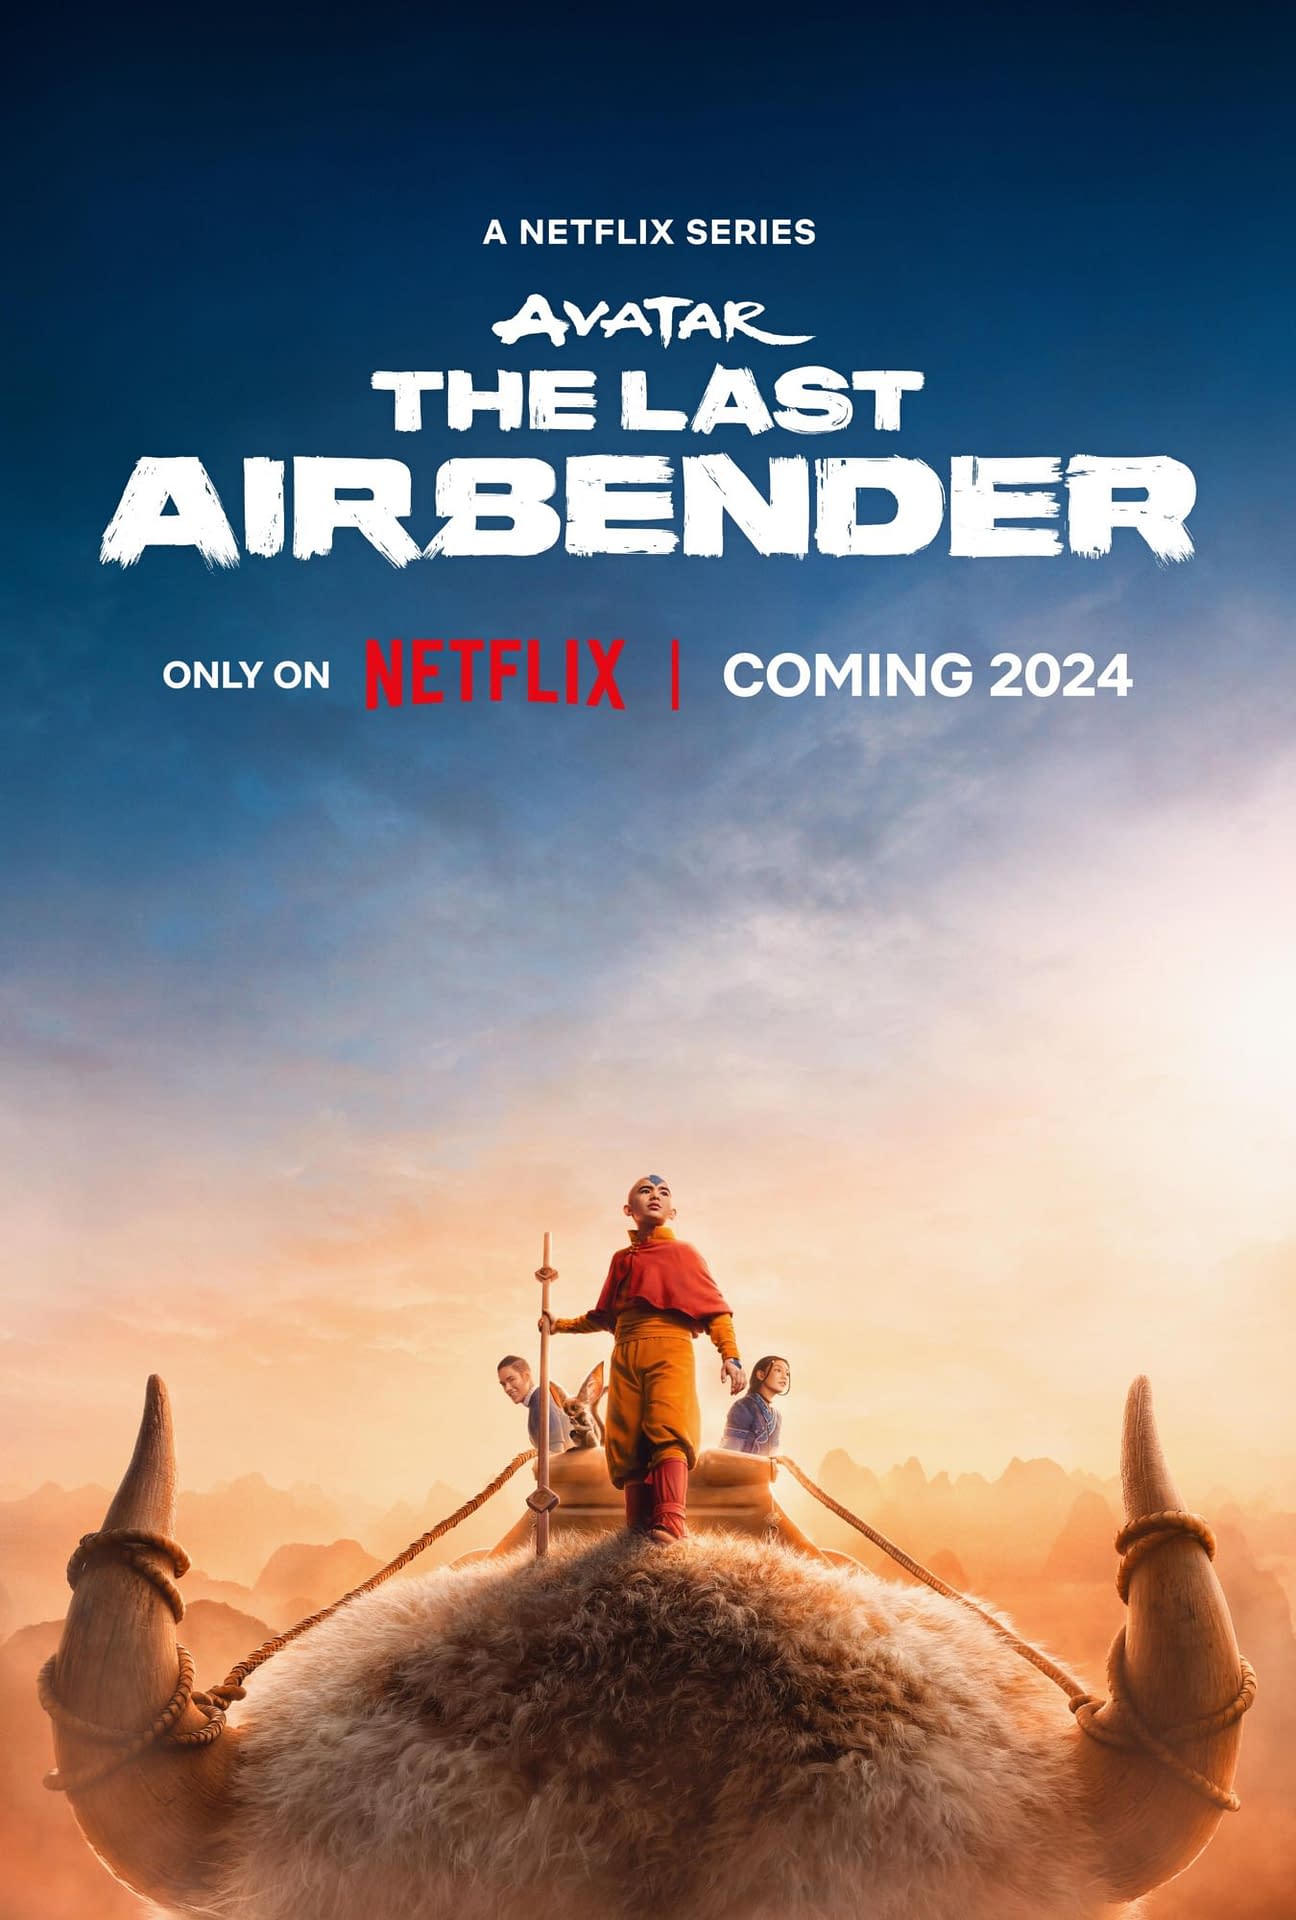 Avatar The Last Airbender Teaser Art Released; "Big Week" Ahead